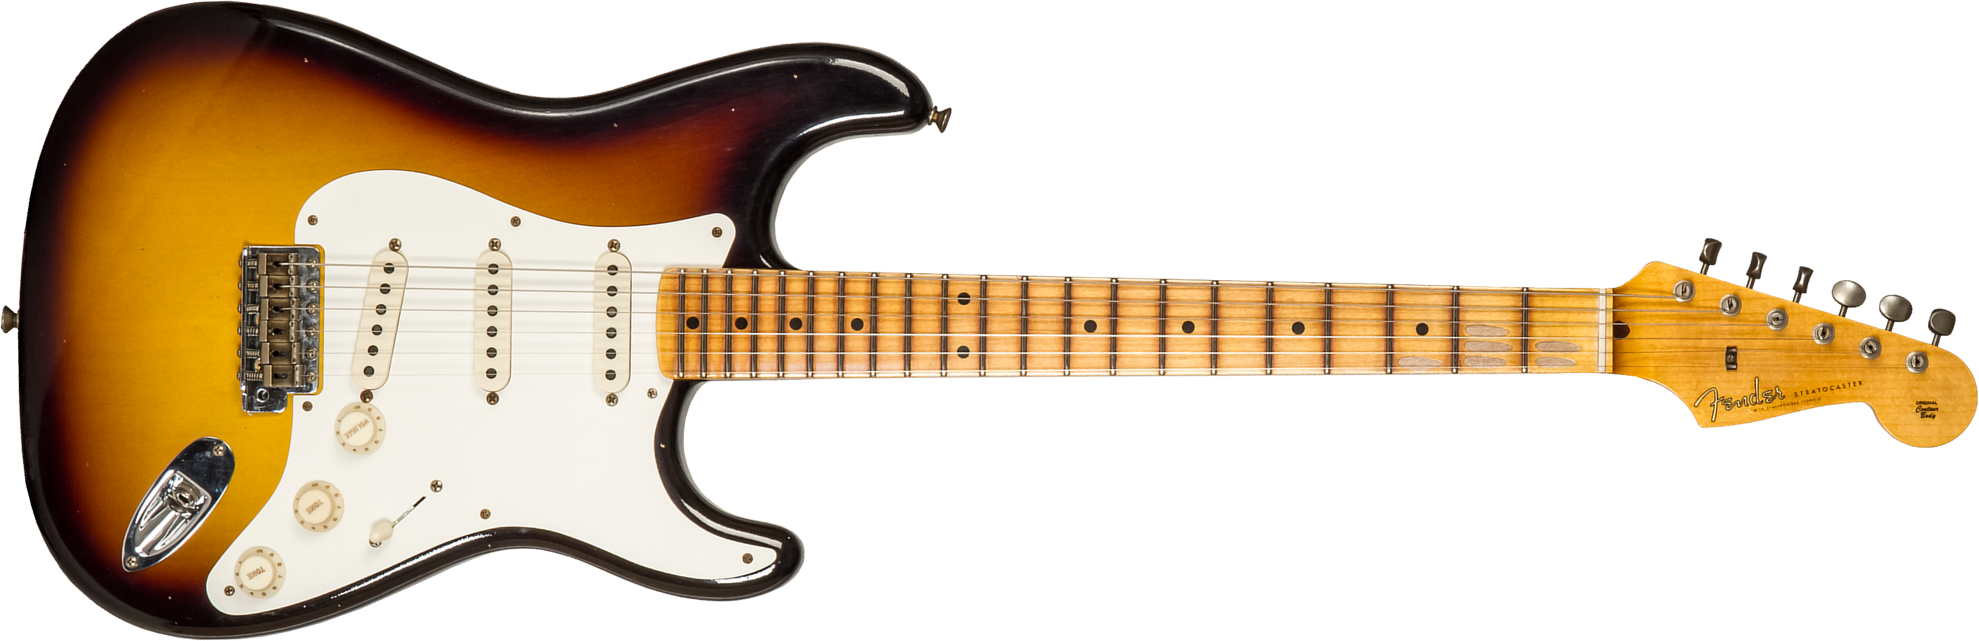 Fender Custom Shop Strat 1956 3s Trem Mn #cz575333 - Journeyman Relic 2-color Sunburst - Guitarra eléctrica con forma de str. - Main picture